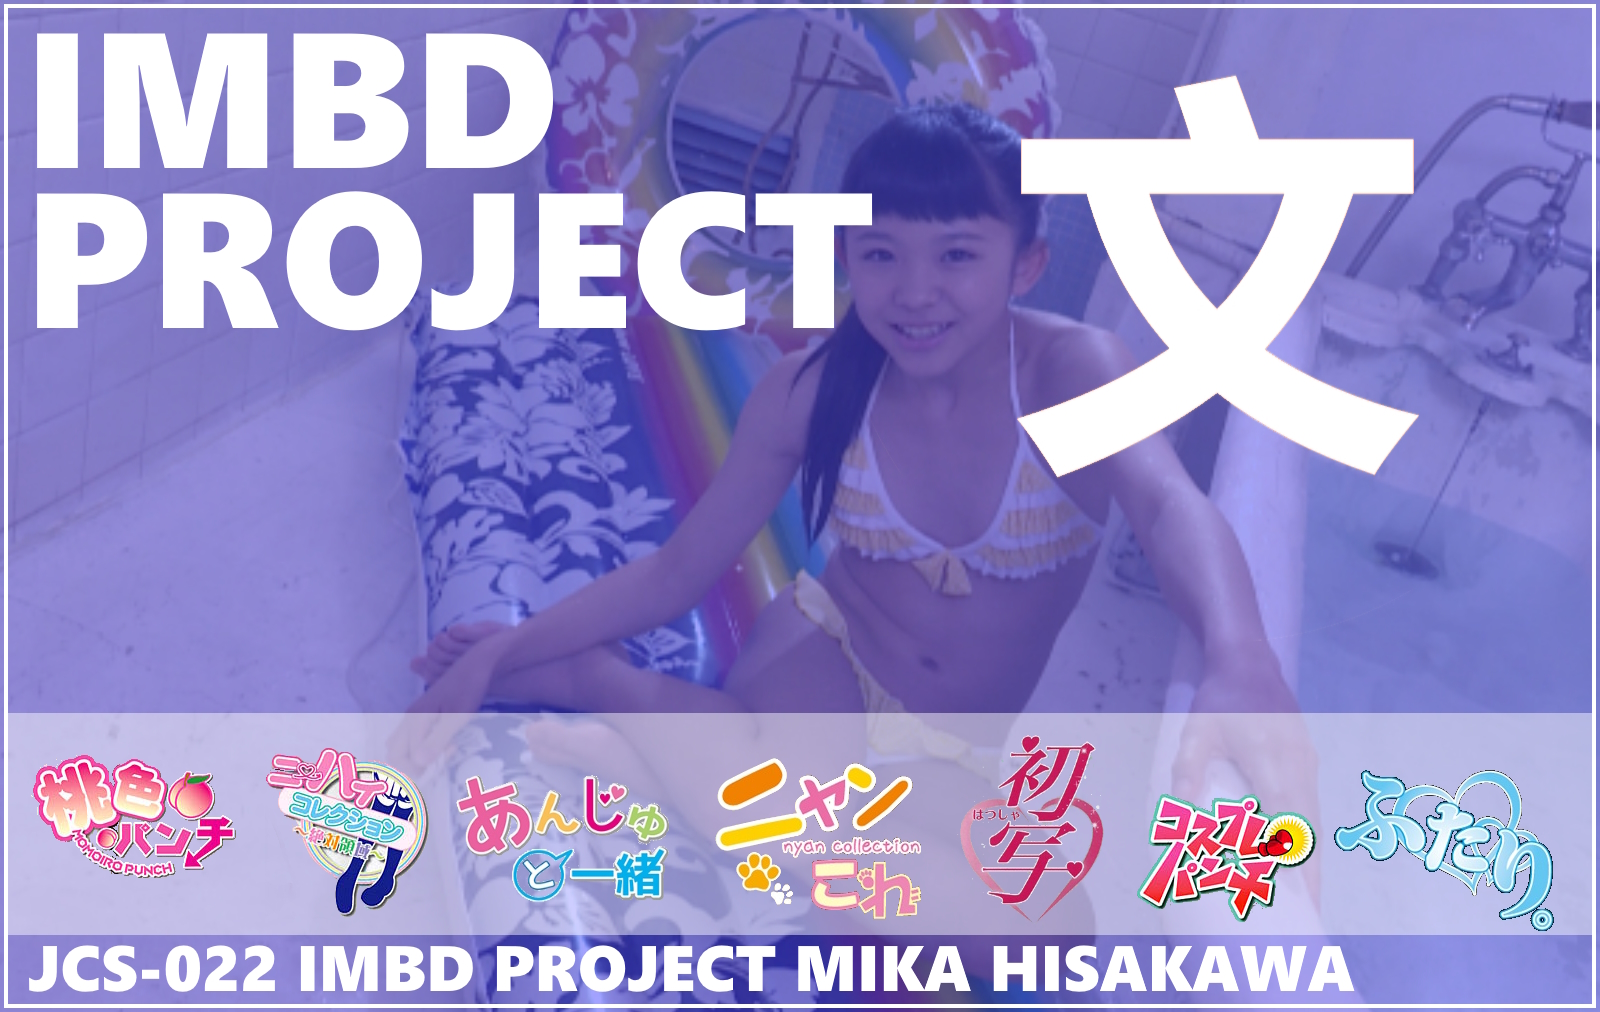 JCS-022 IMBD Project Mika Hisakawa